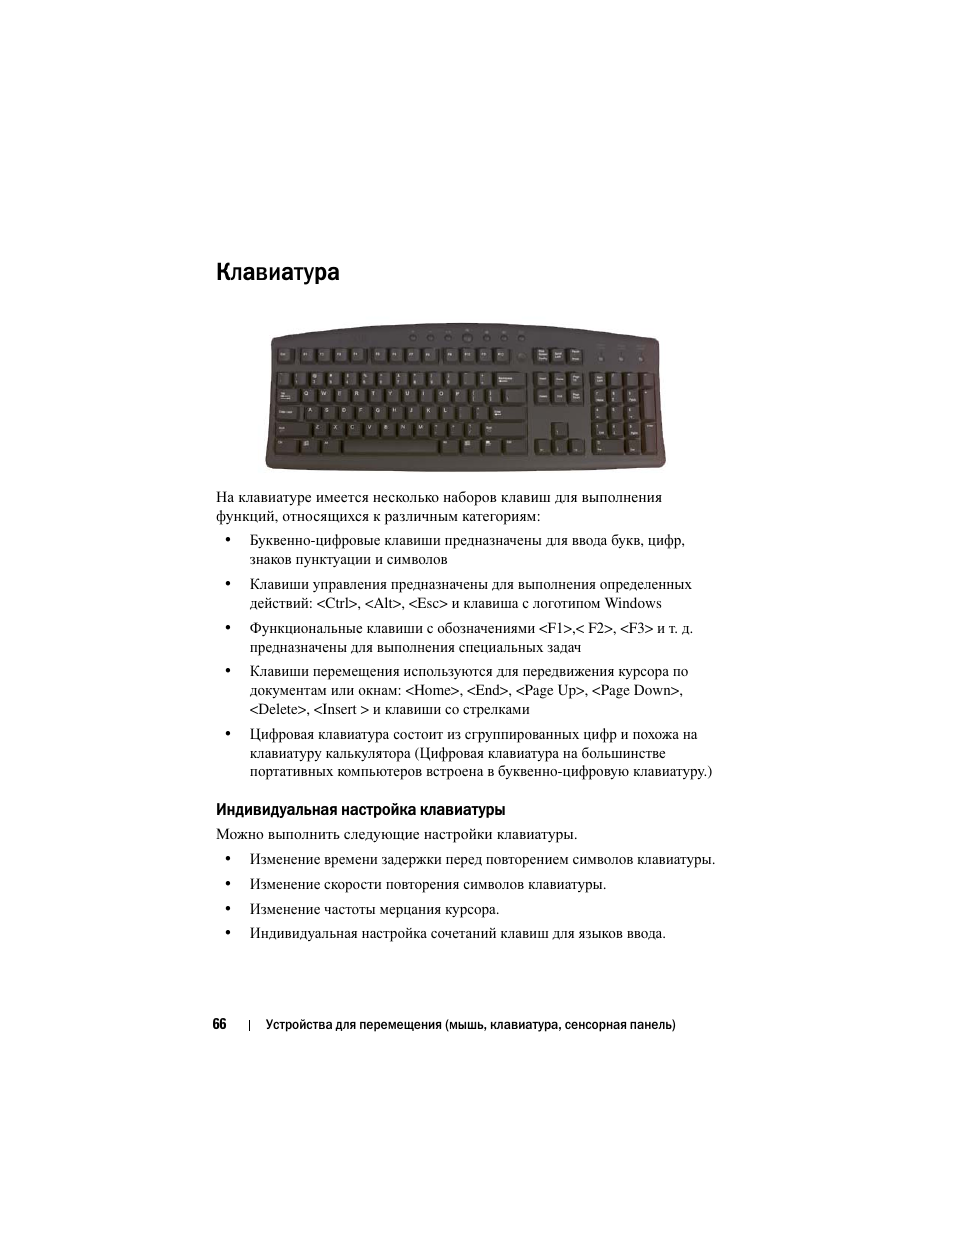 Клавиатура, Индивидуальная настройка клавиатуры | Инструкция по эксплуатации Dell Inspiron 560 | Страница 66 / 384